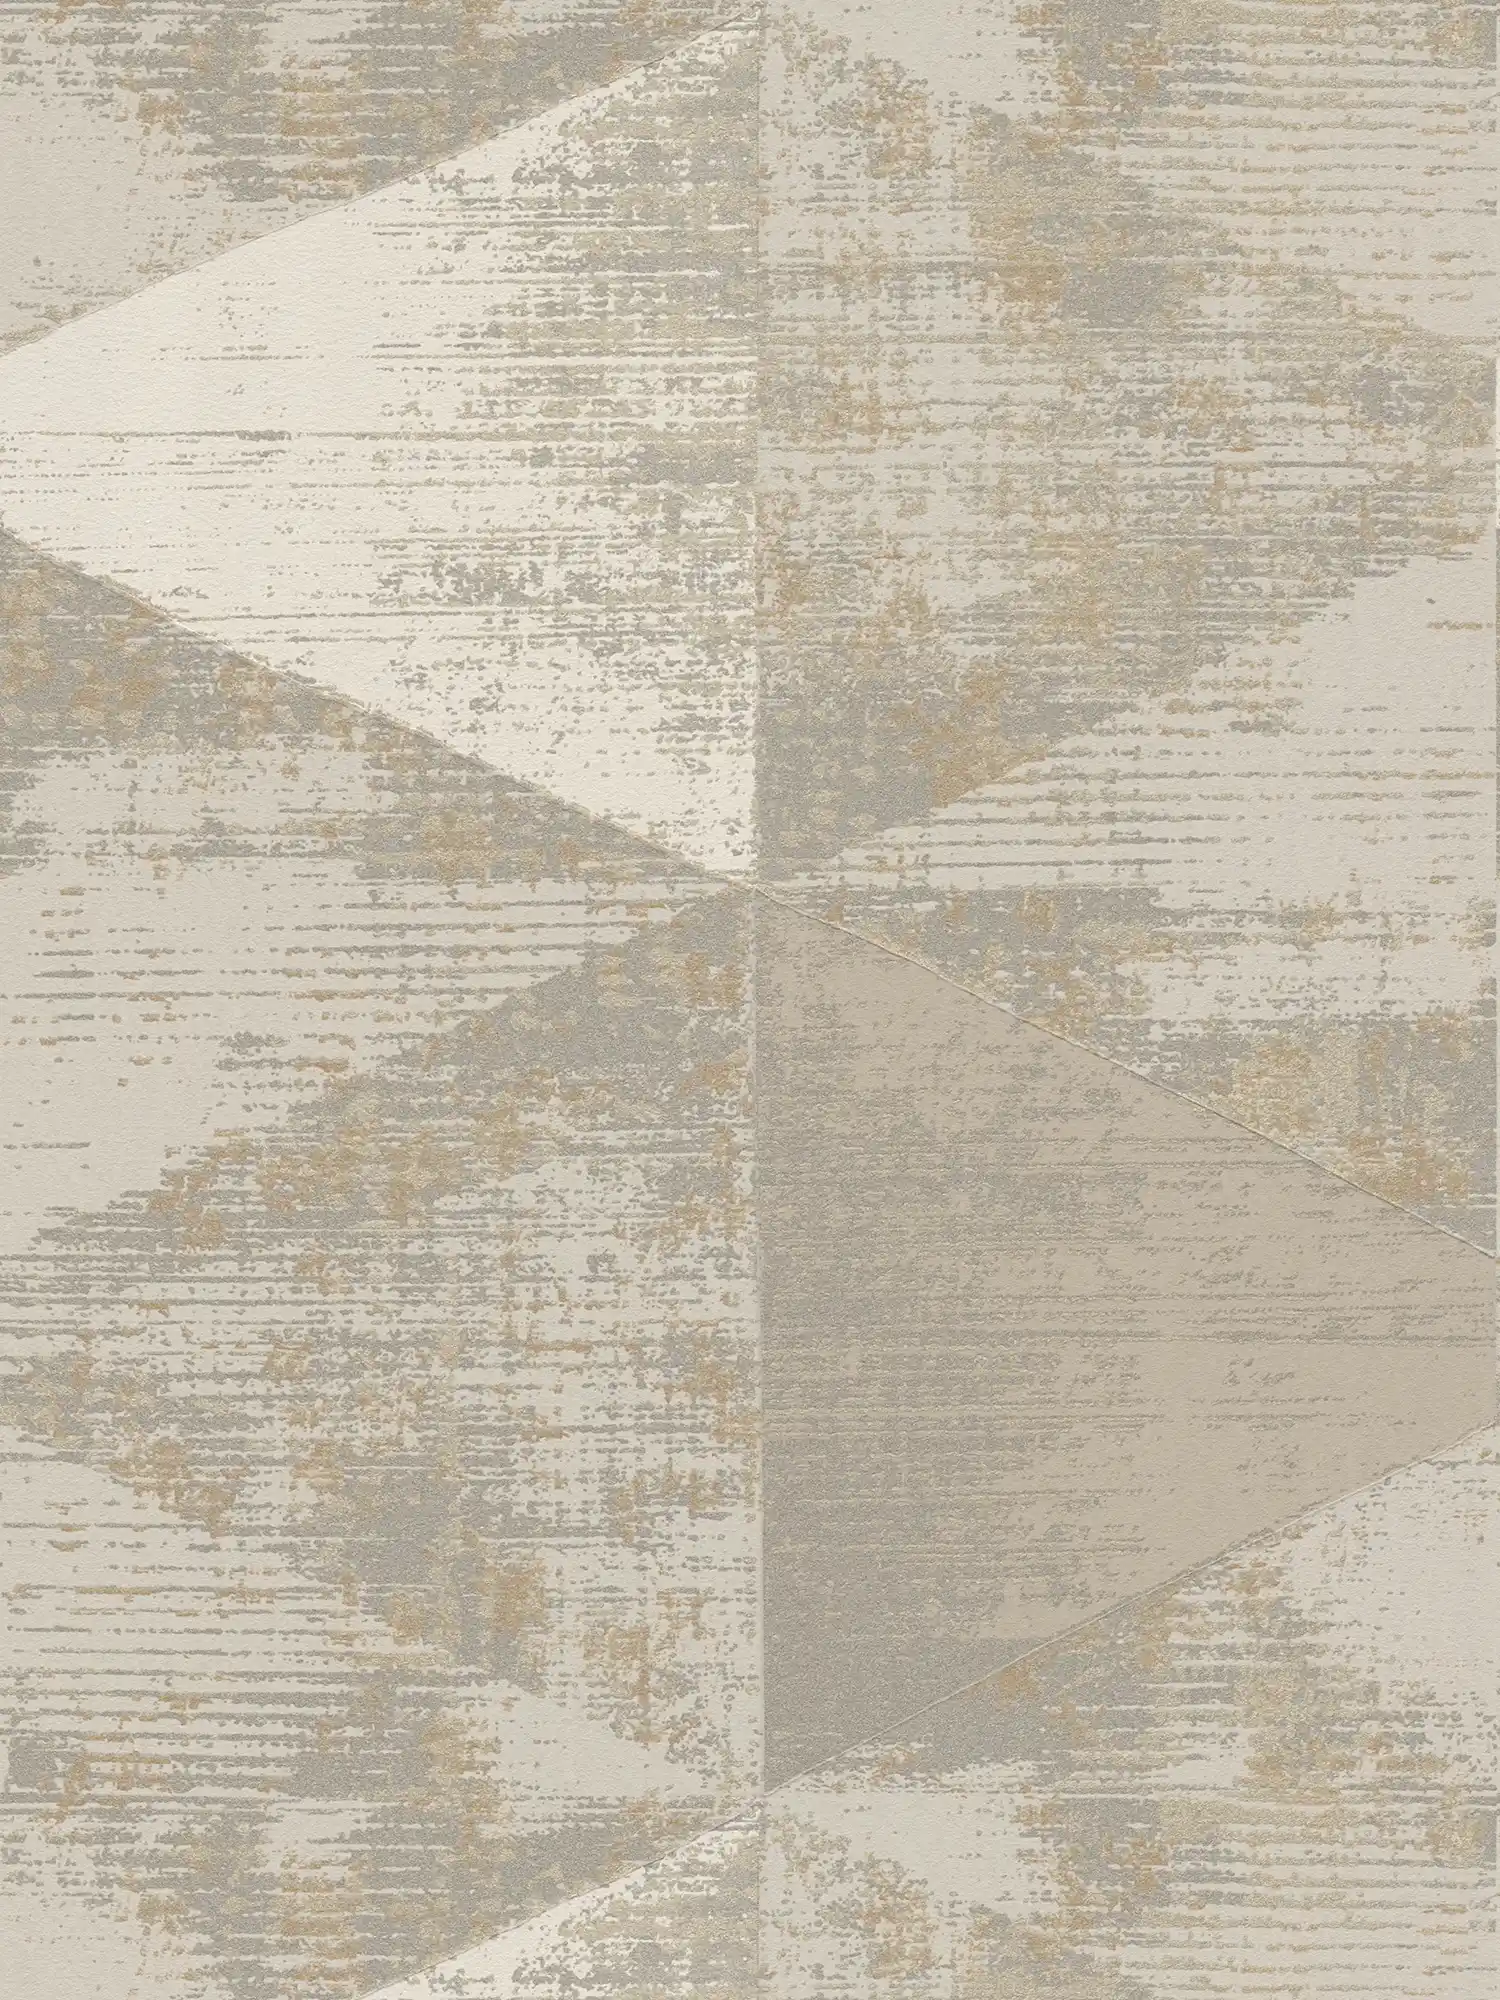         Papier peint style industriel avec aspect rustique métallique - métallique, beige, gris
    